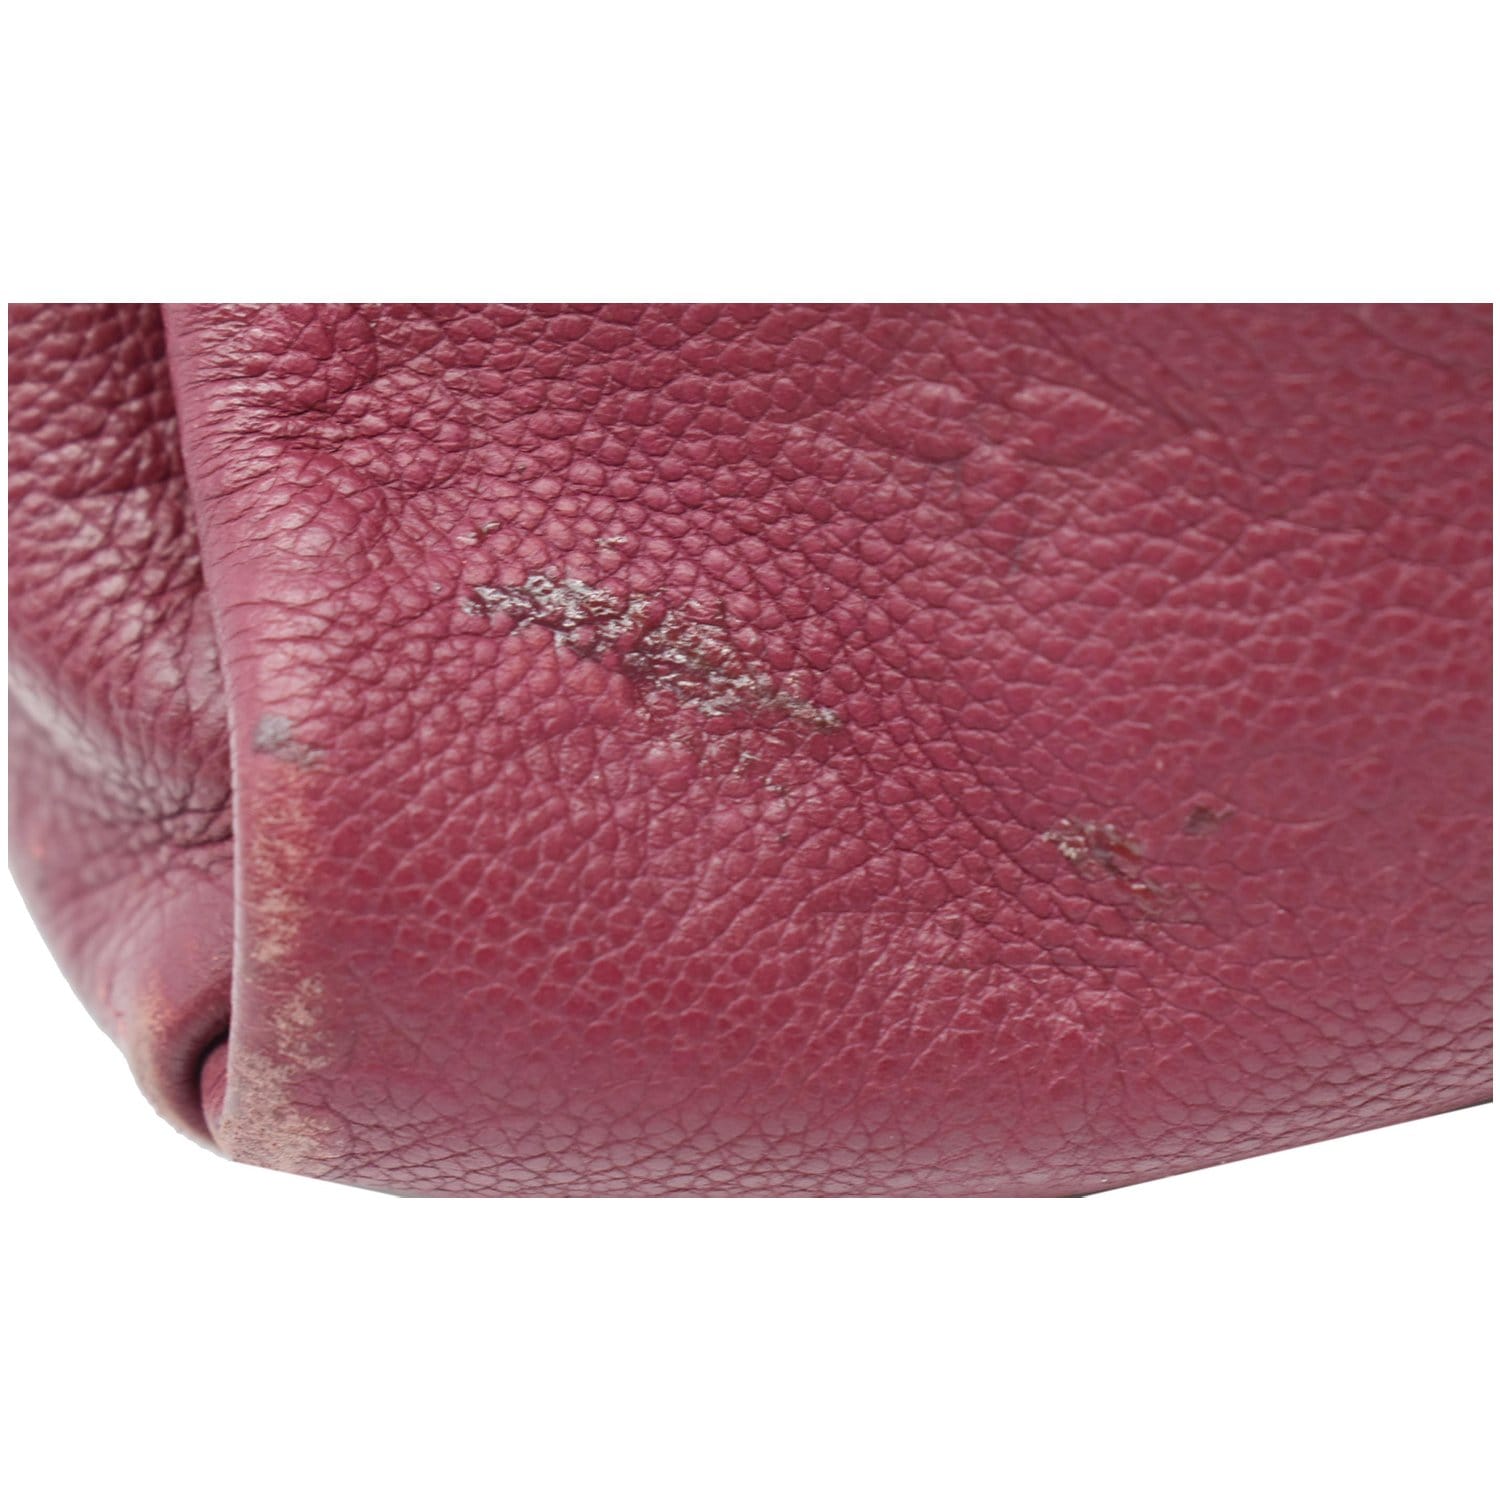 LOUIS VUITTON Artsy MM Empreinte Leather Shoulder Bag Mulberry - Last